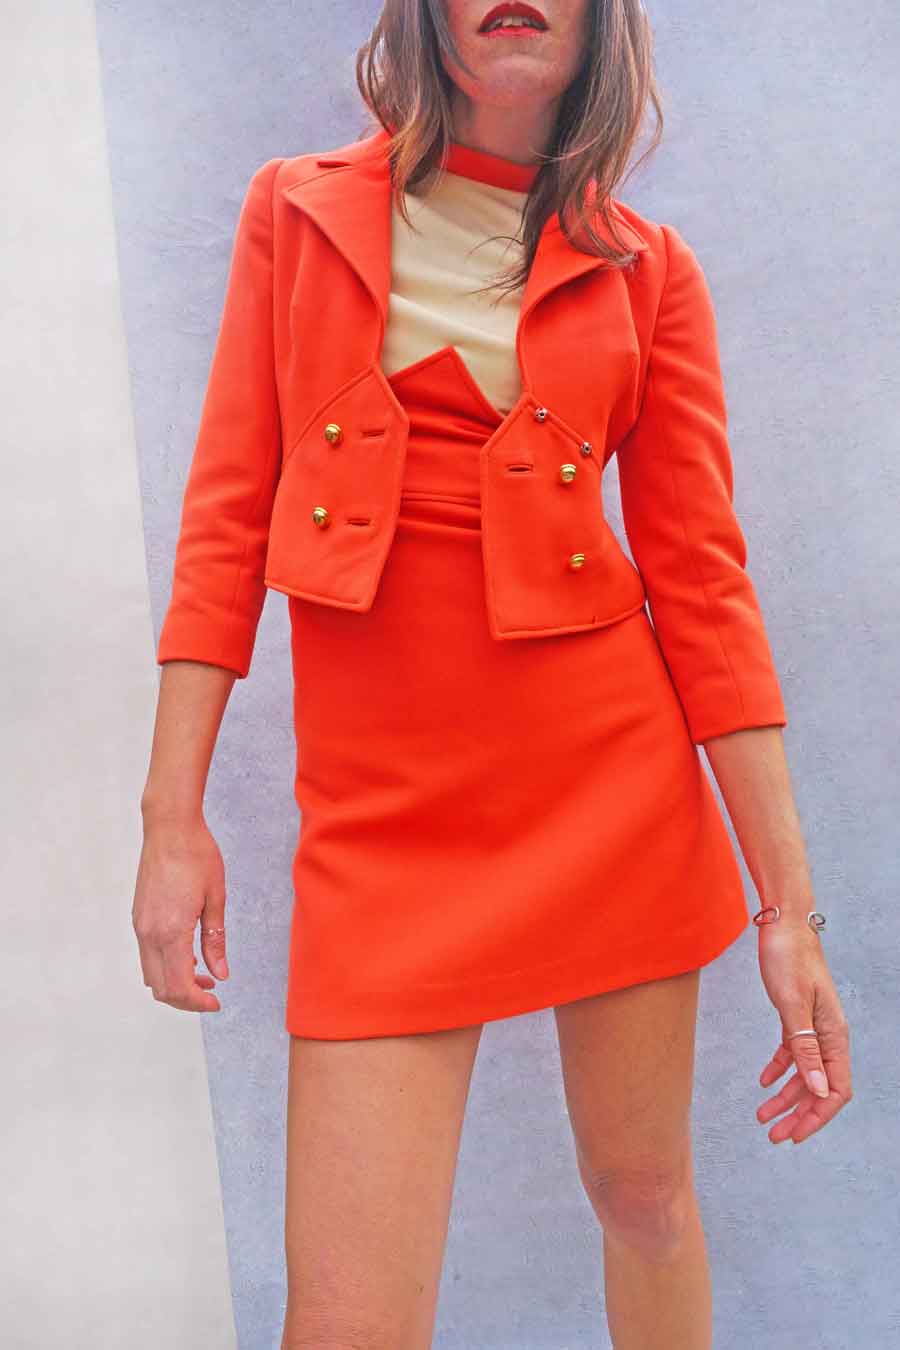 Vintage 60s Mod Louis Feraud Orange Mini Dress Suit